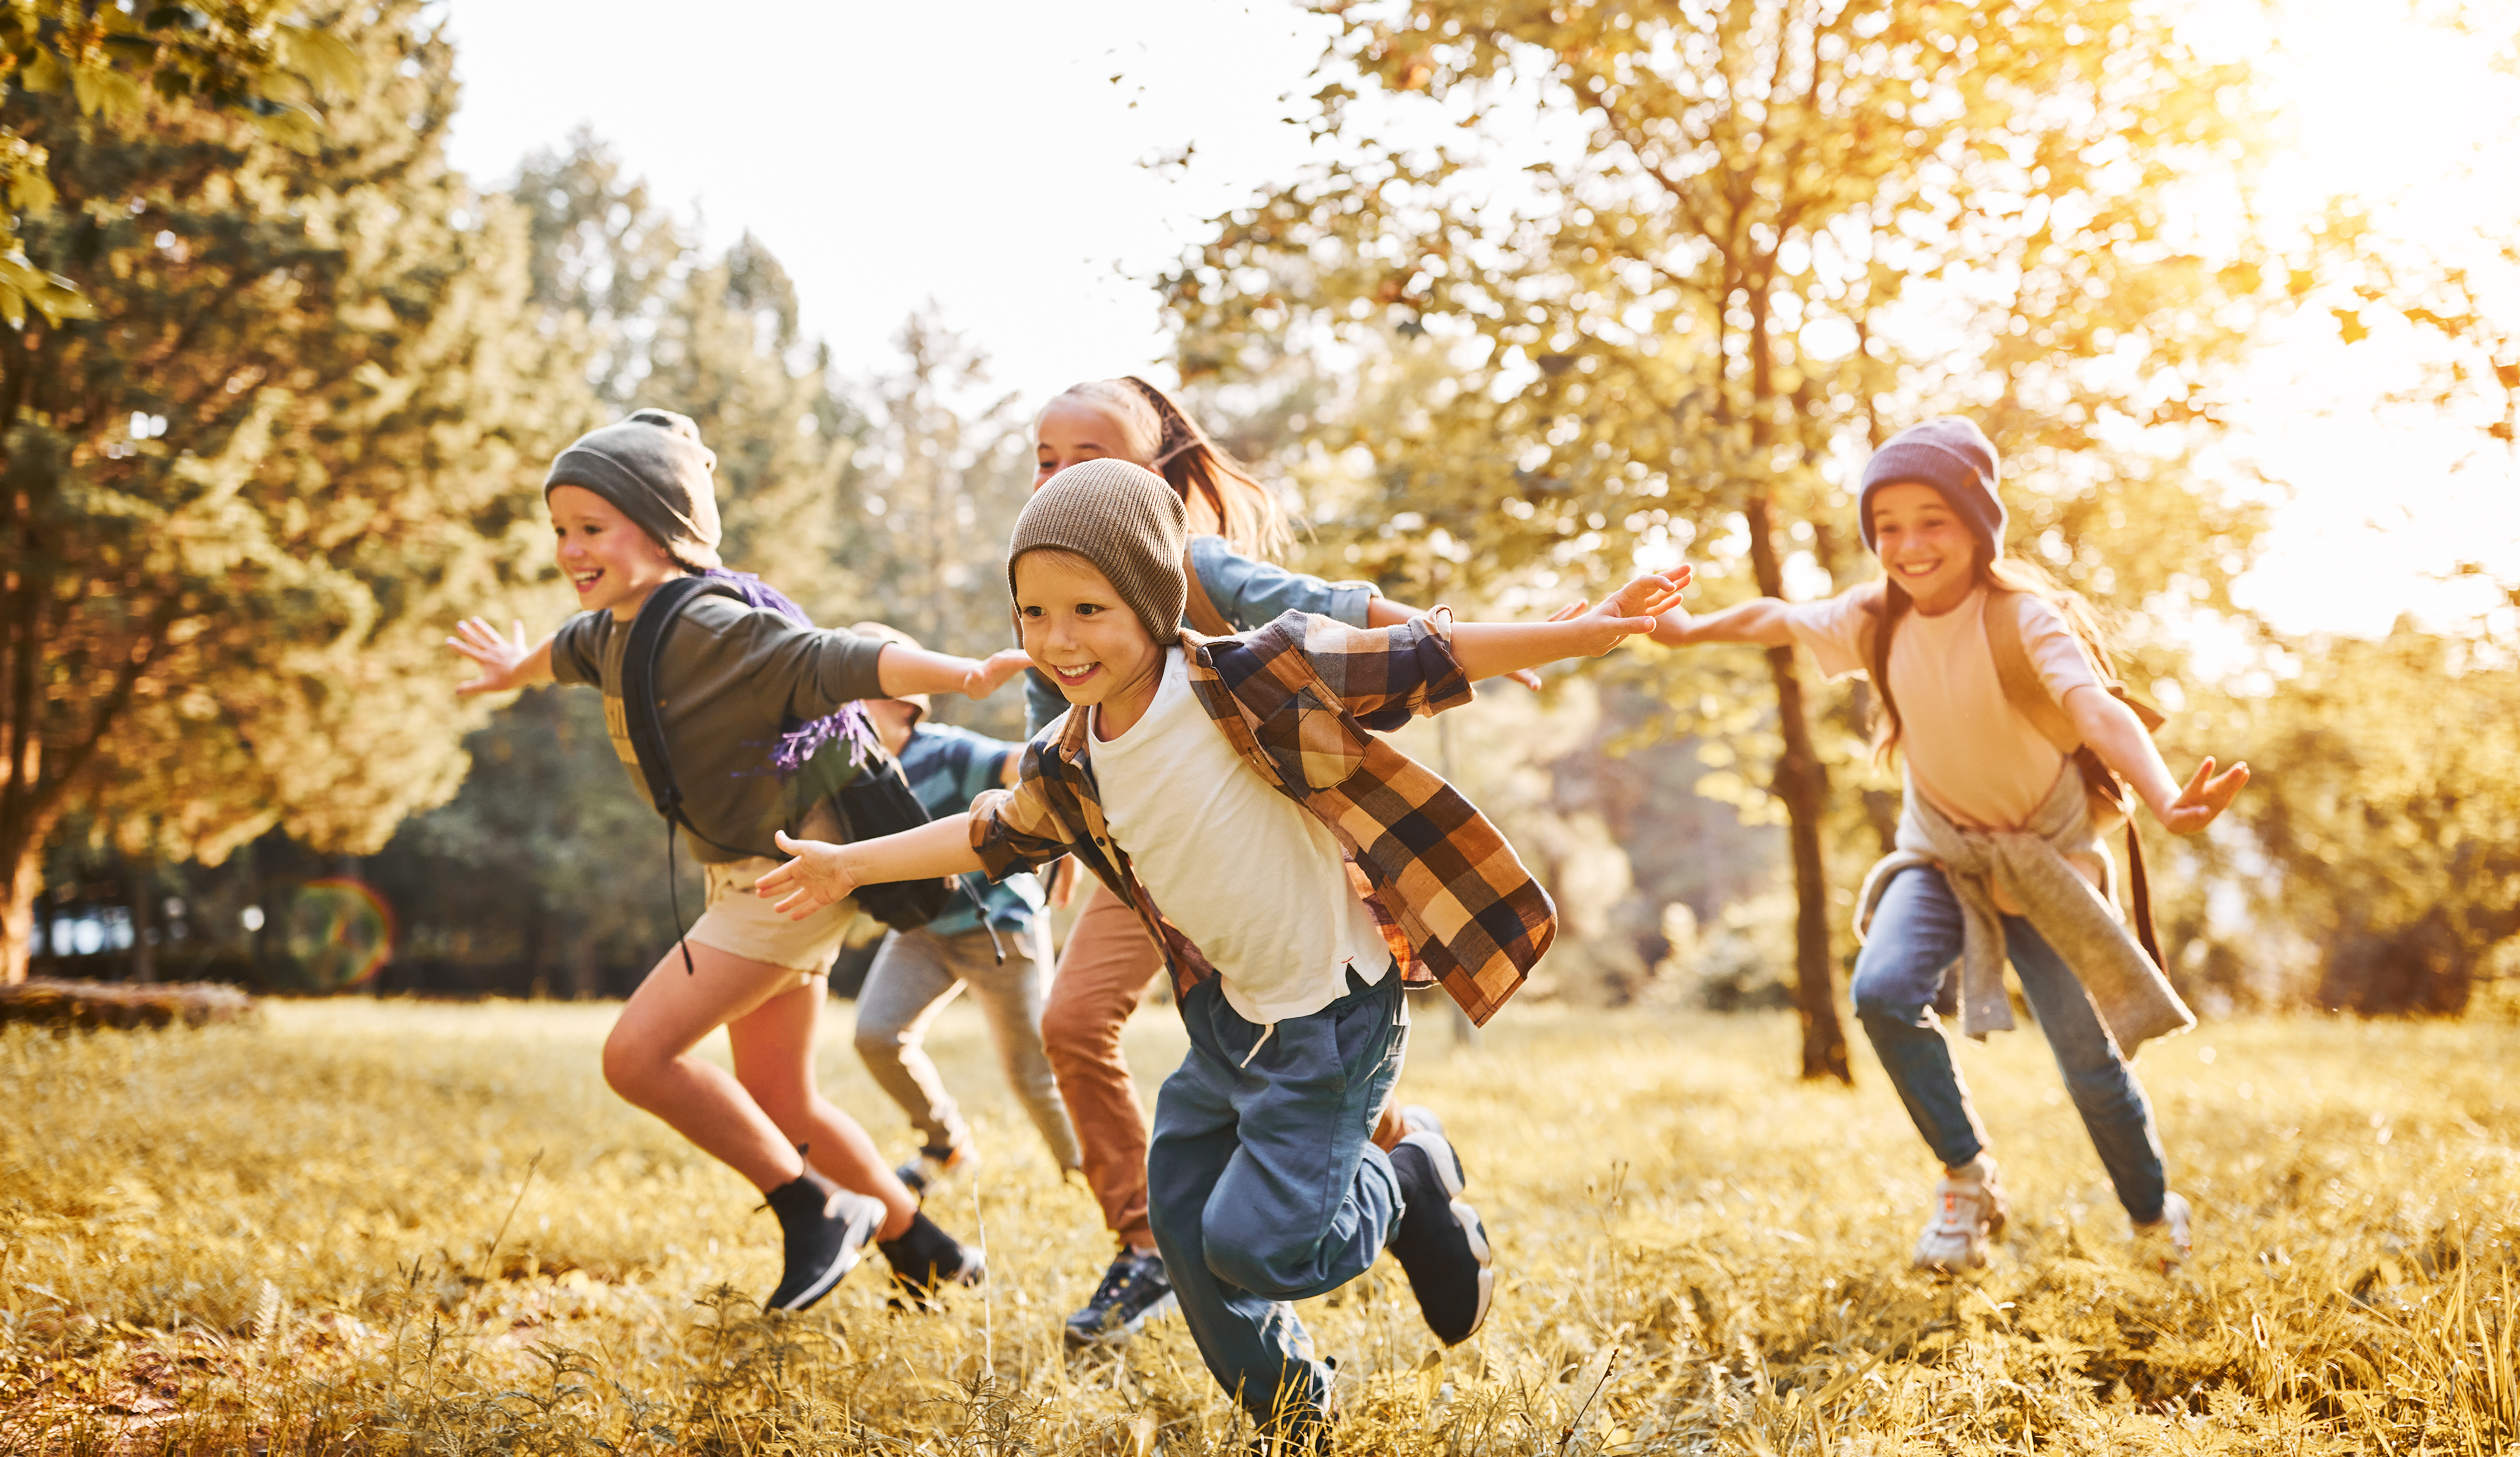 Enfants en train de jouer | Source : Shutterstock